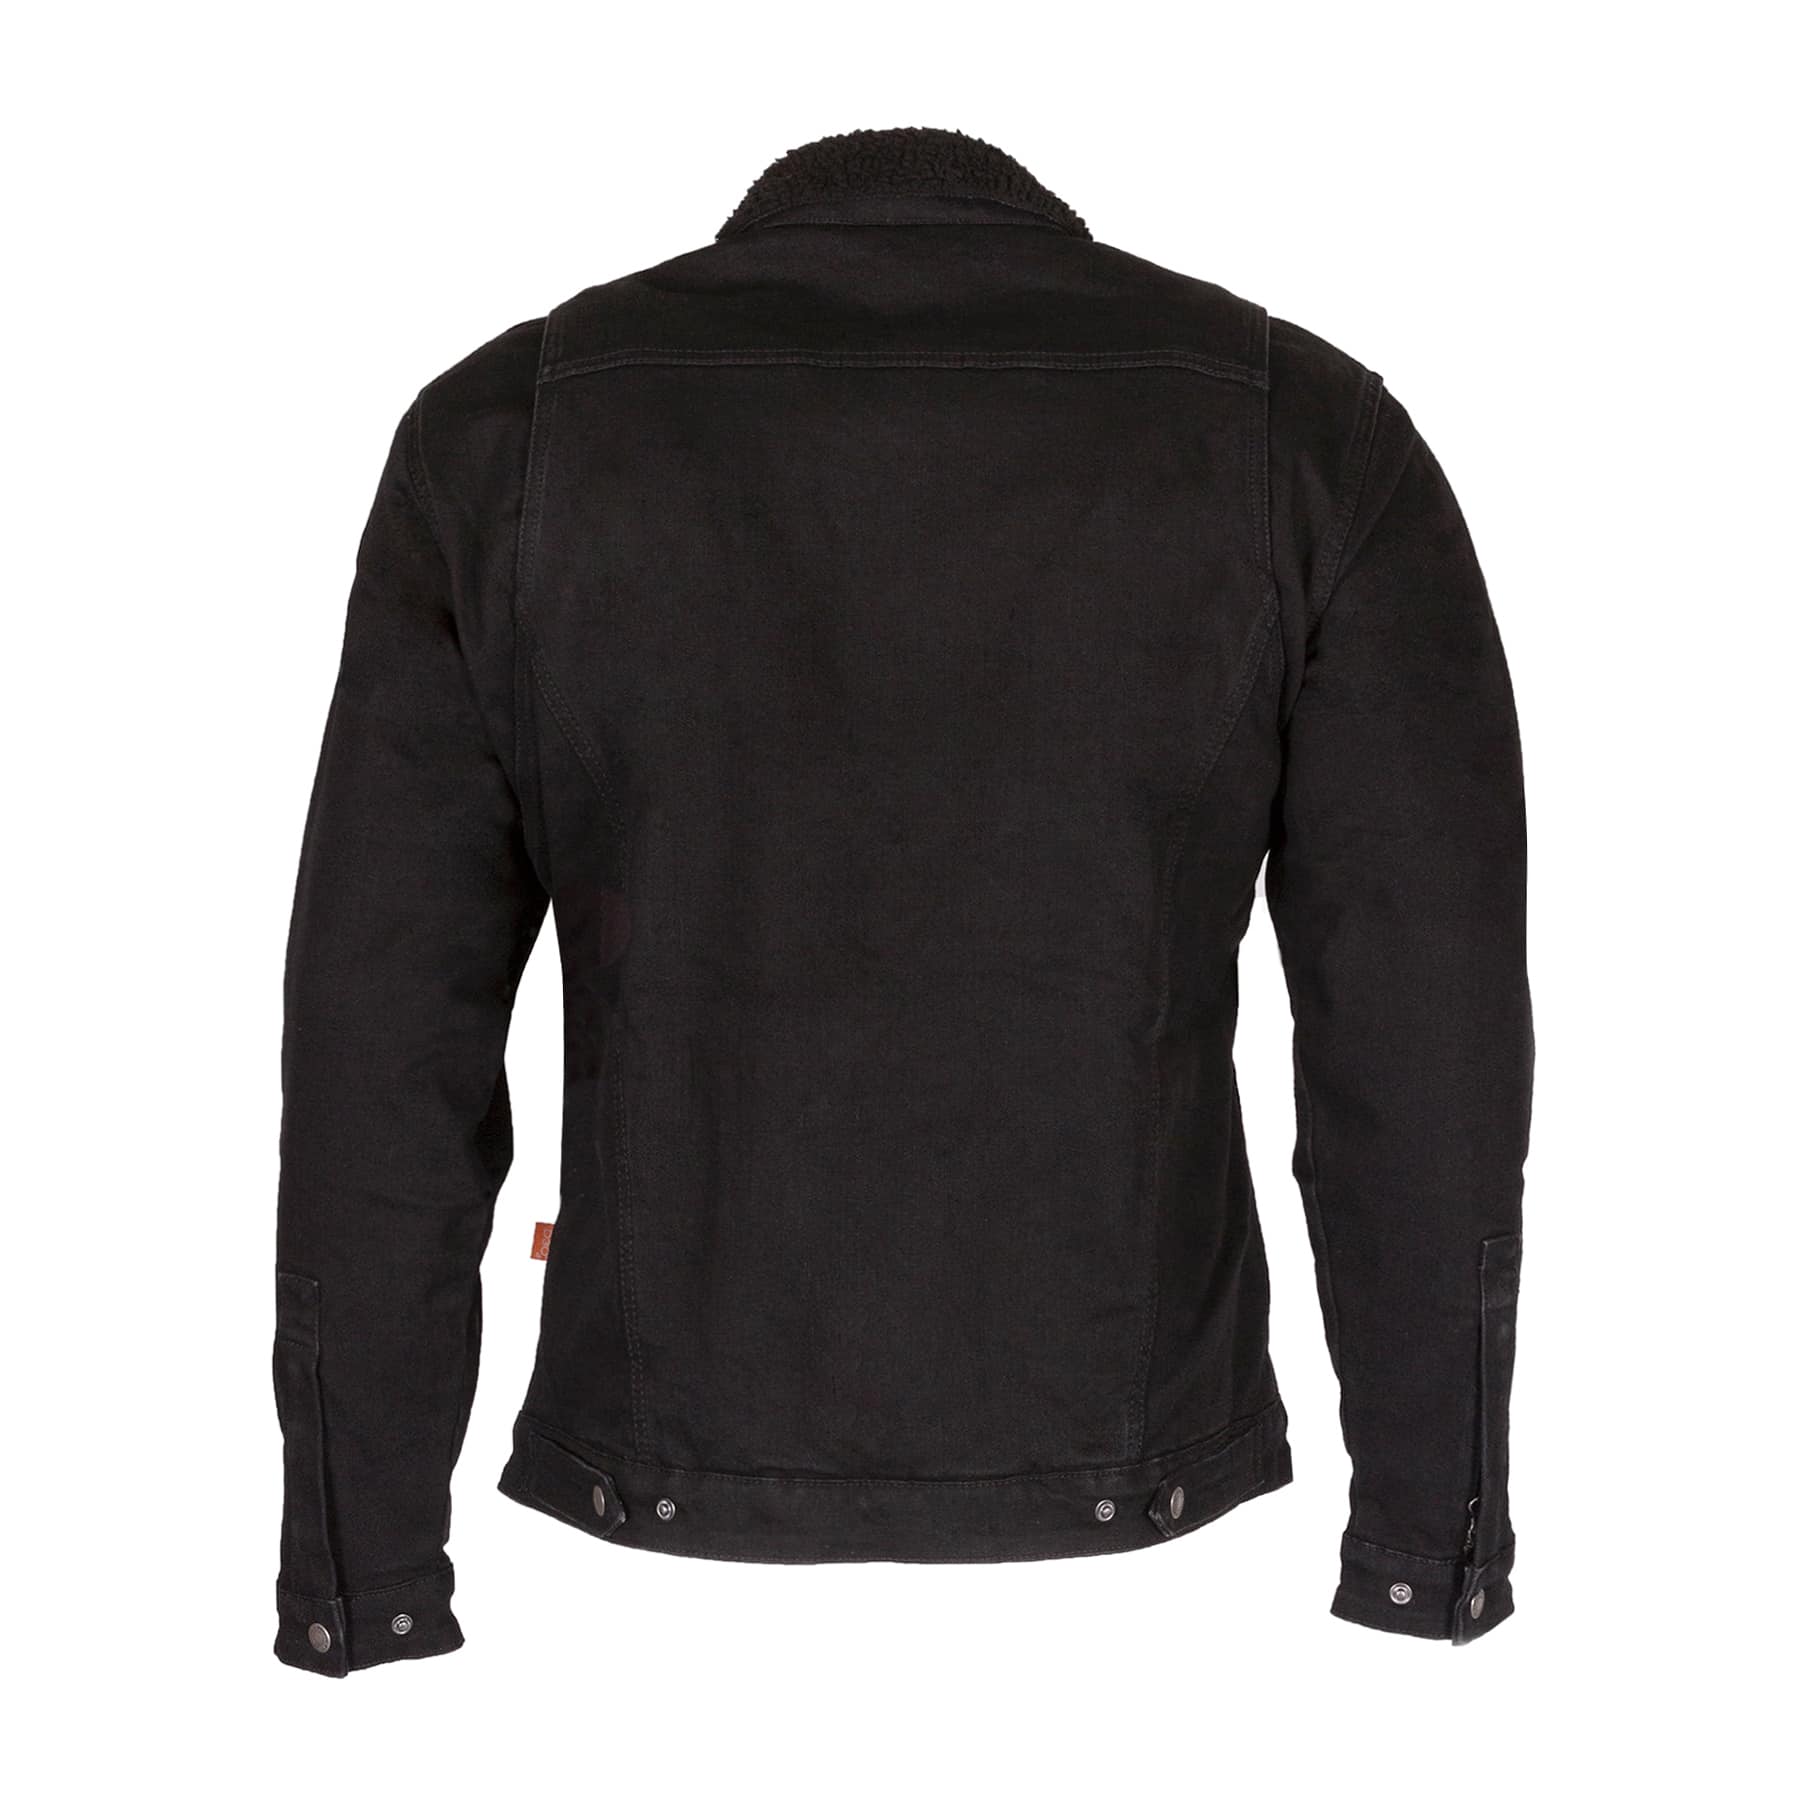 Merlin Sherpa jacket in black